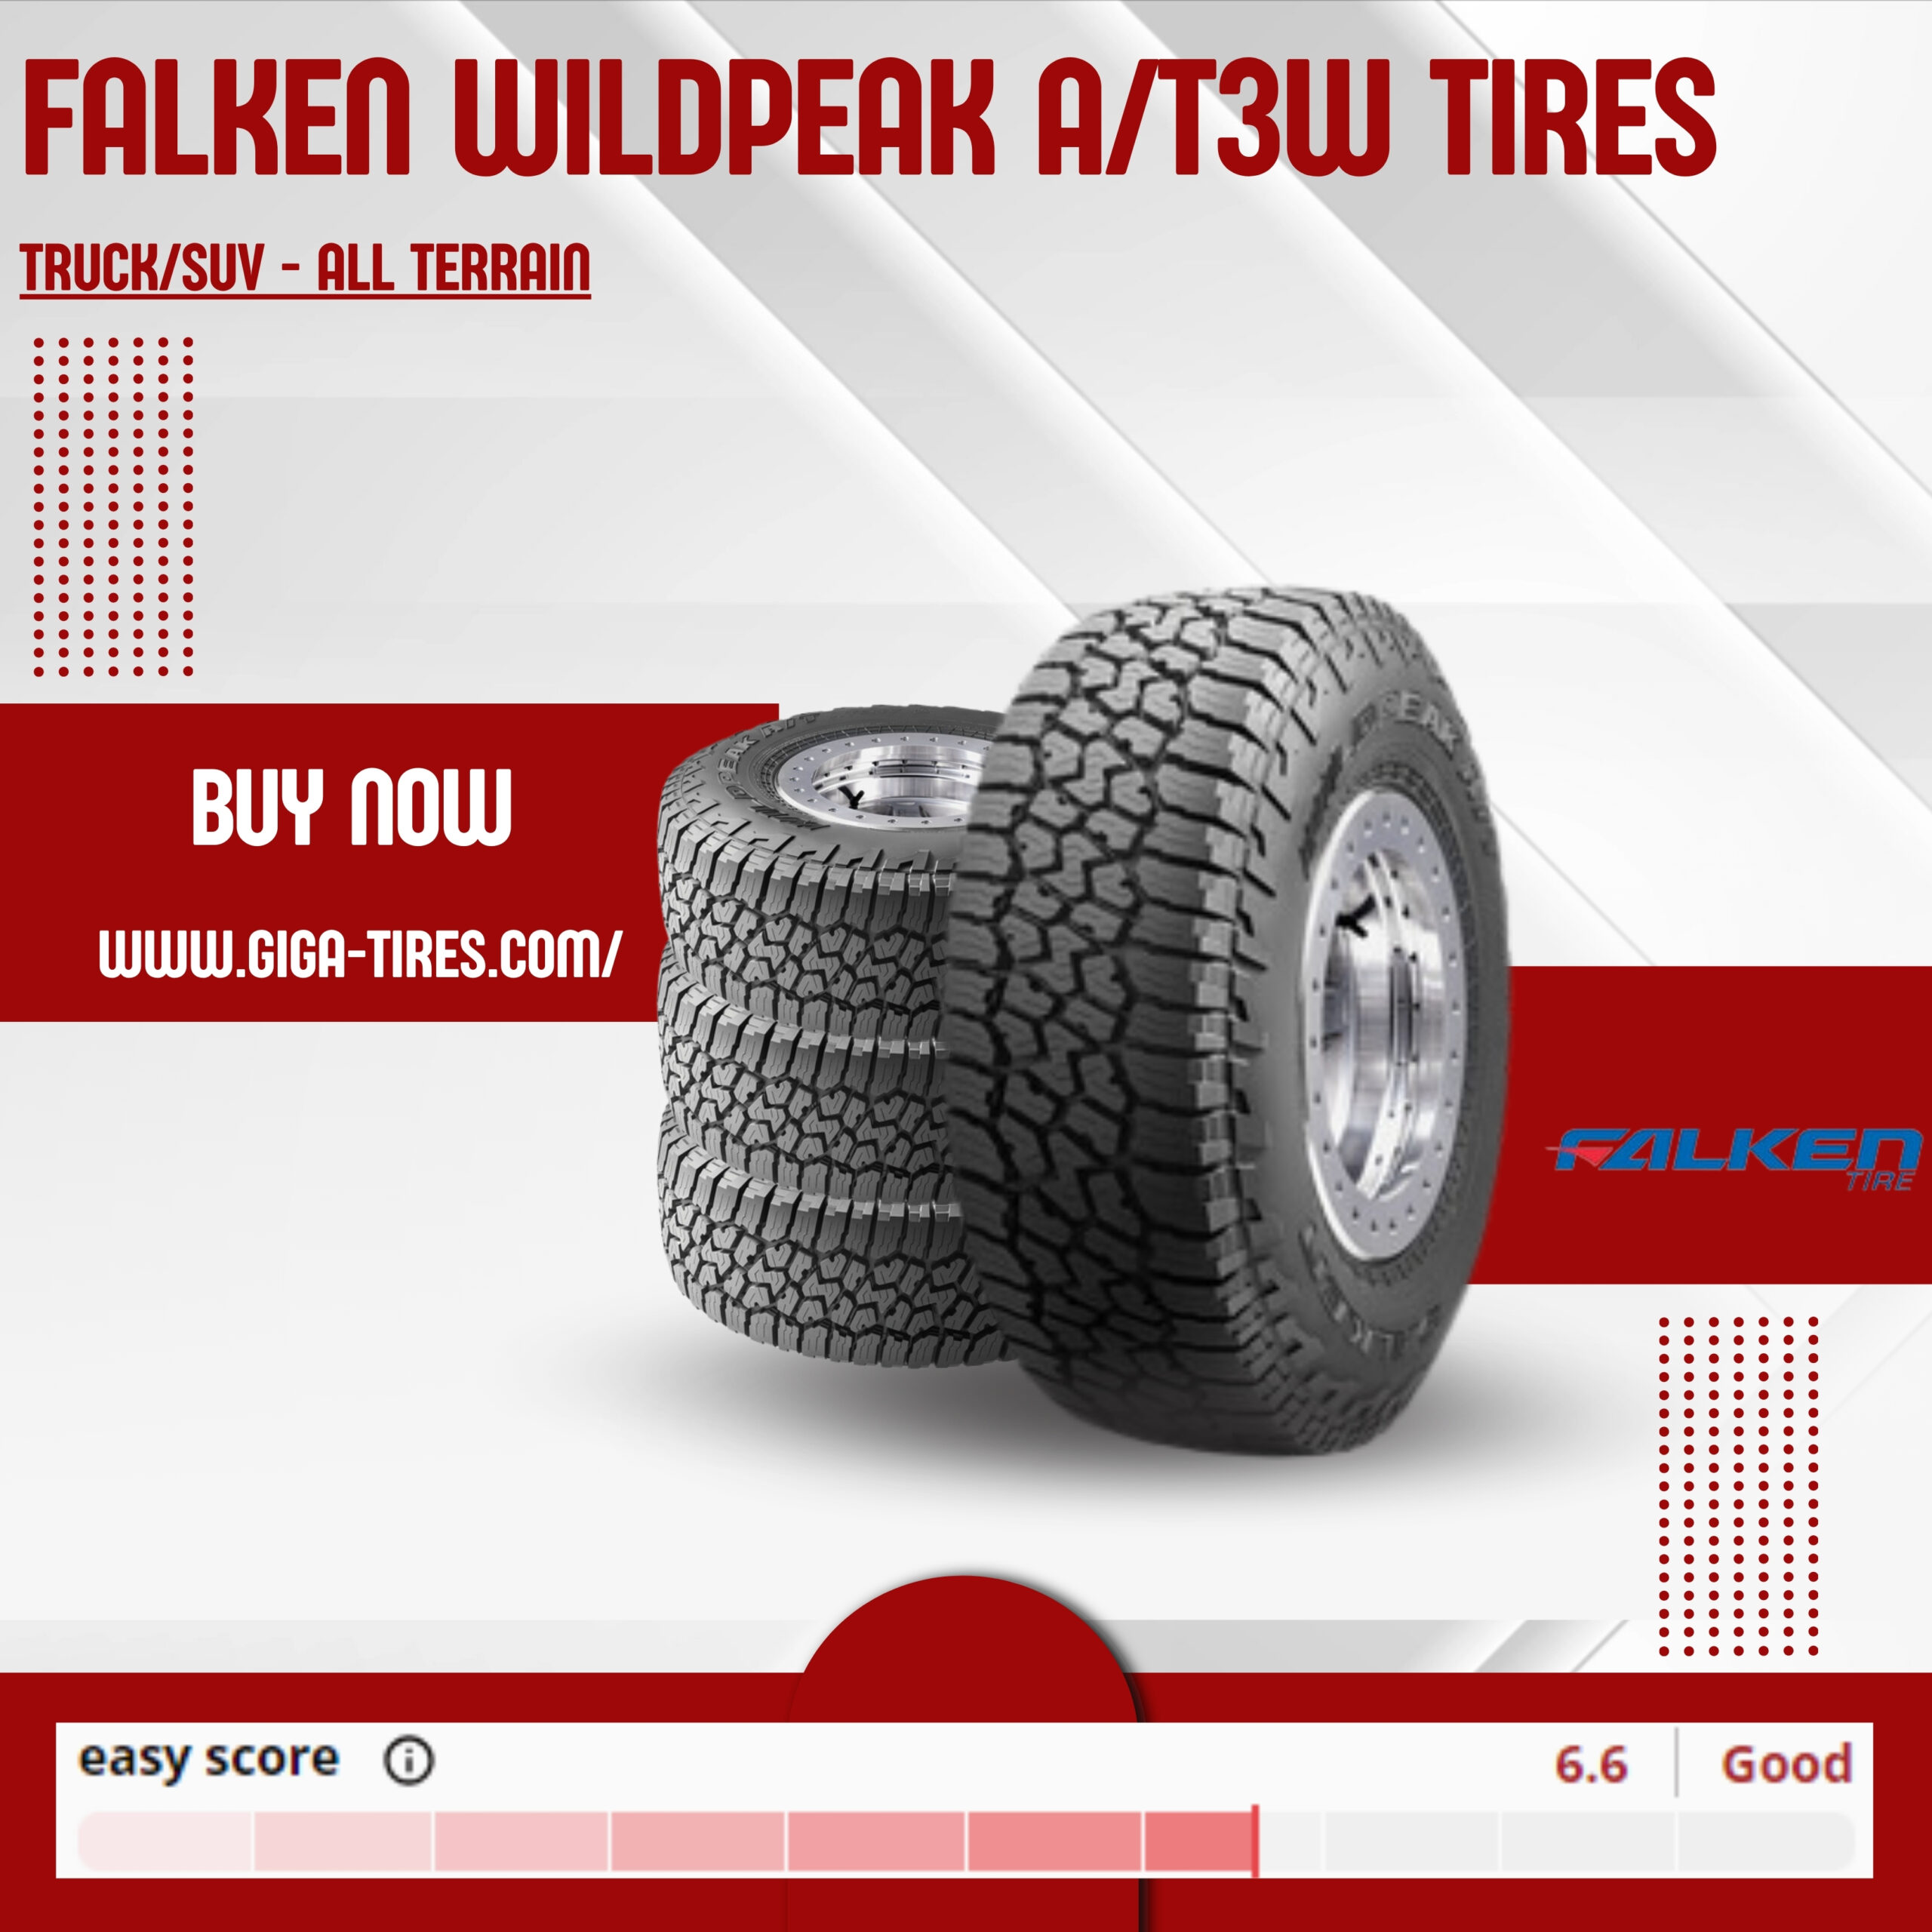 Falken wildpeak a/t3w tires